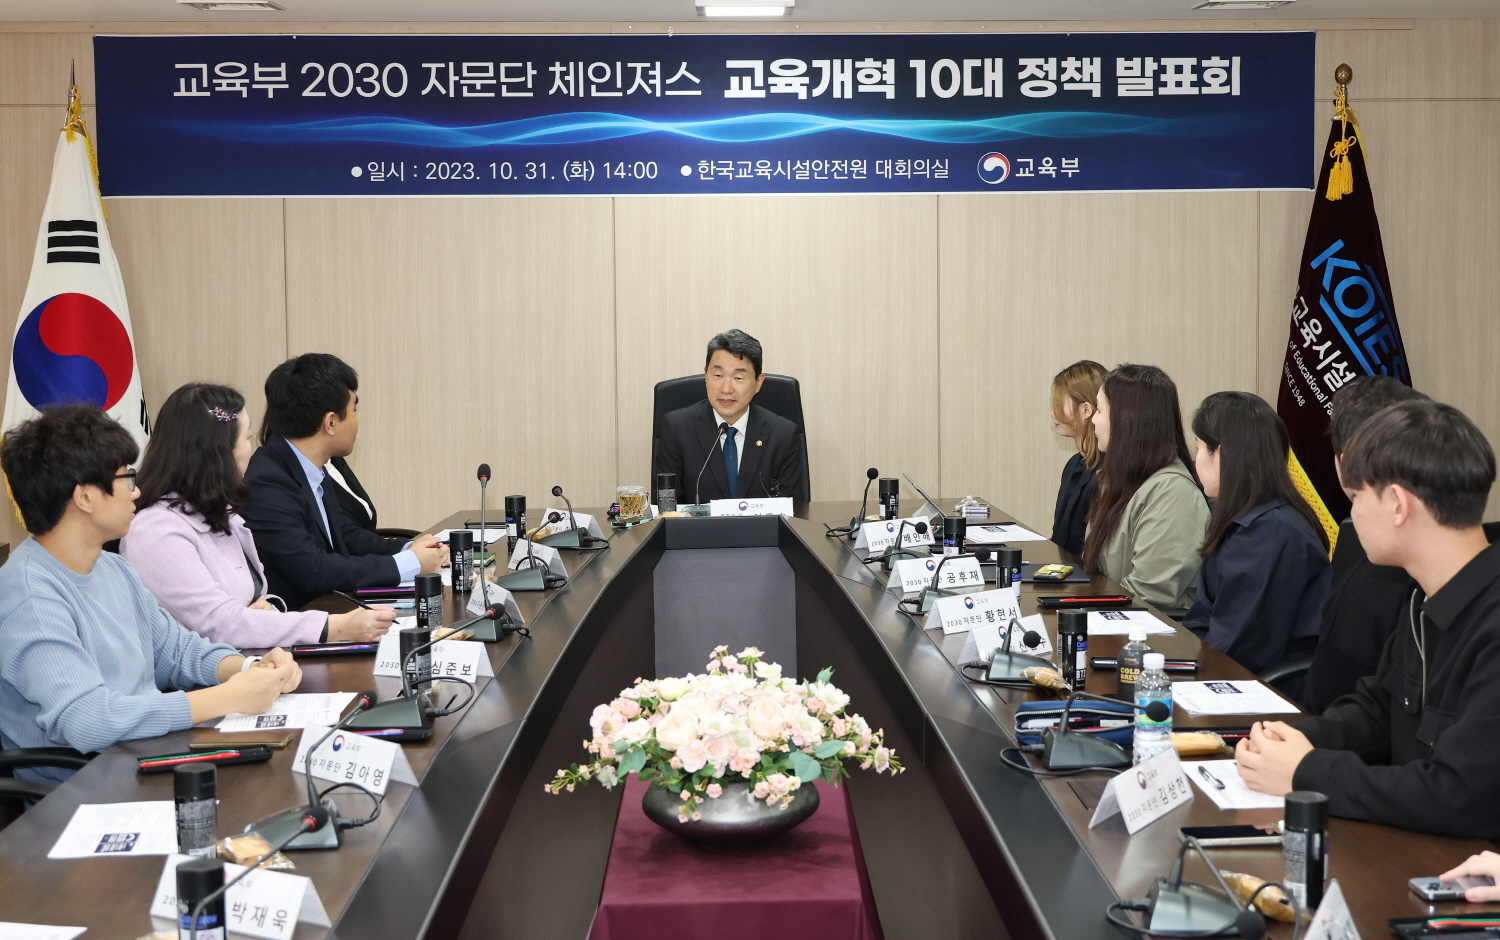 이주호 부총리 겸 교육부장관은 10월 31일(화), 한국교육시설안전원에서 ‘2030 자문단 체인져스(CHANGERS)’가 제안한 10대 제안 과제에 대해 논의했다.